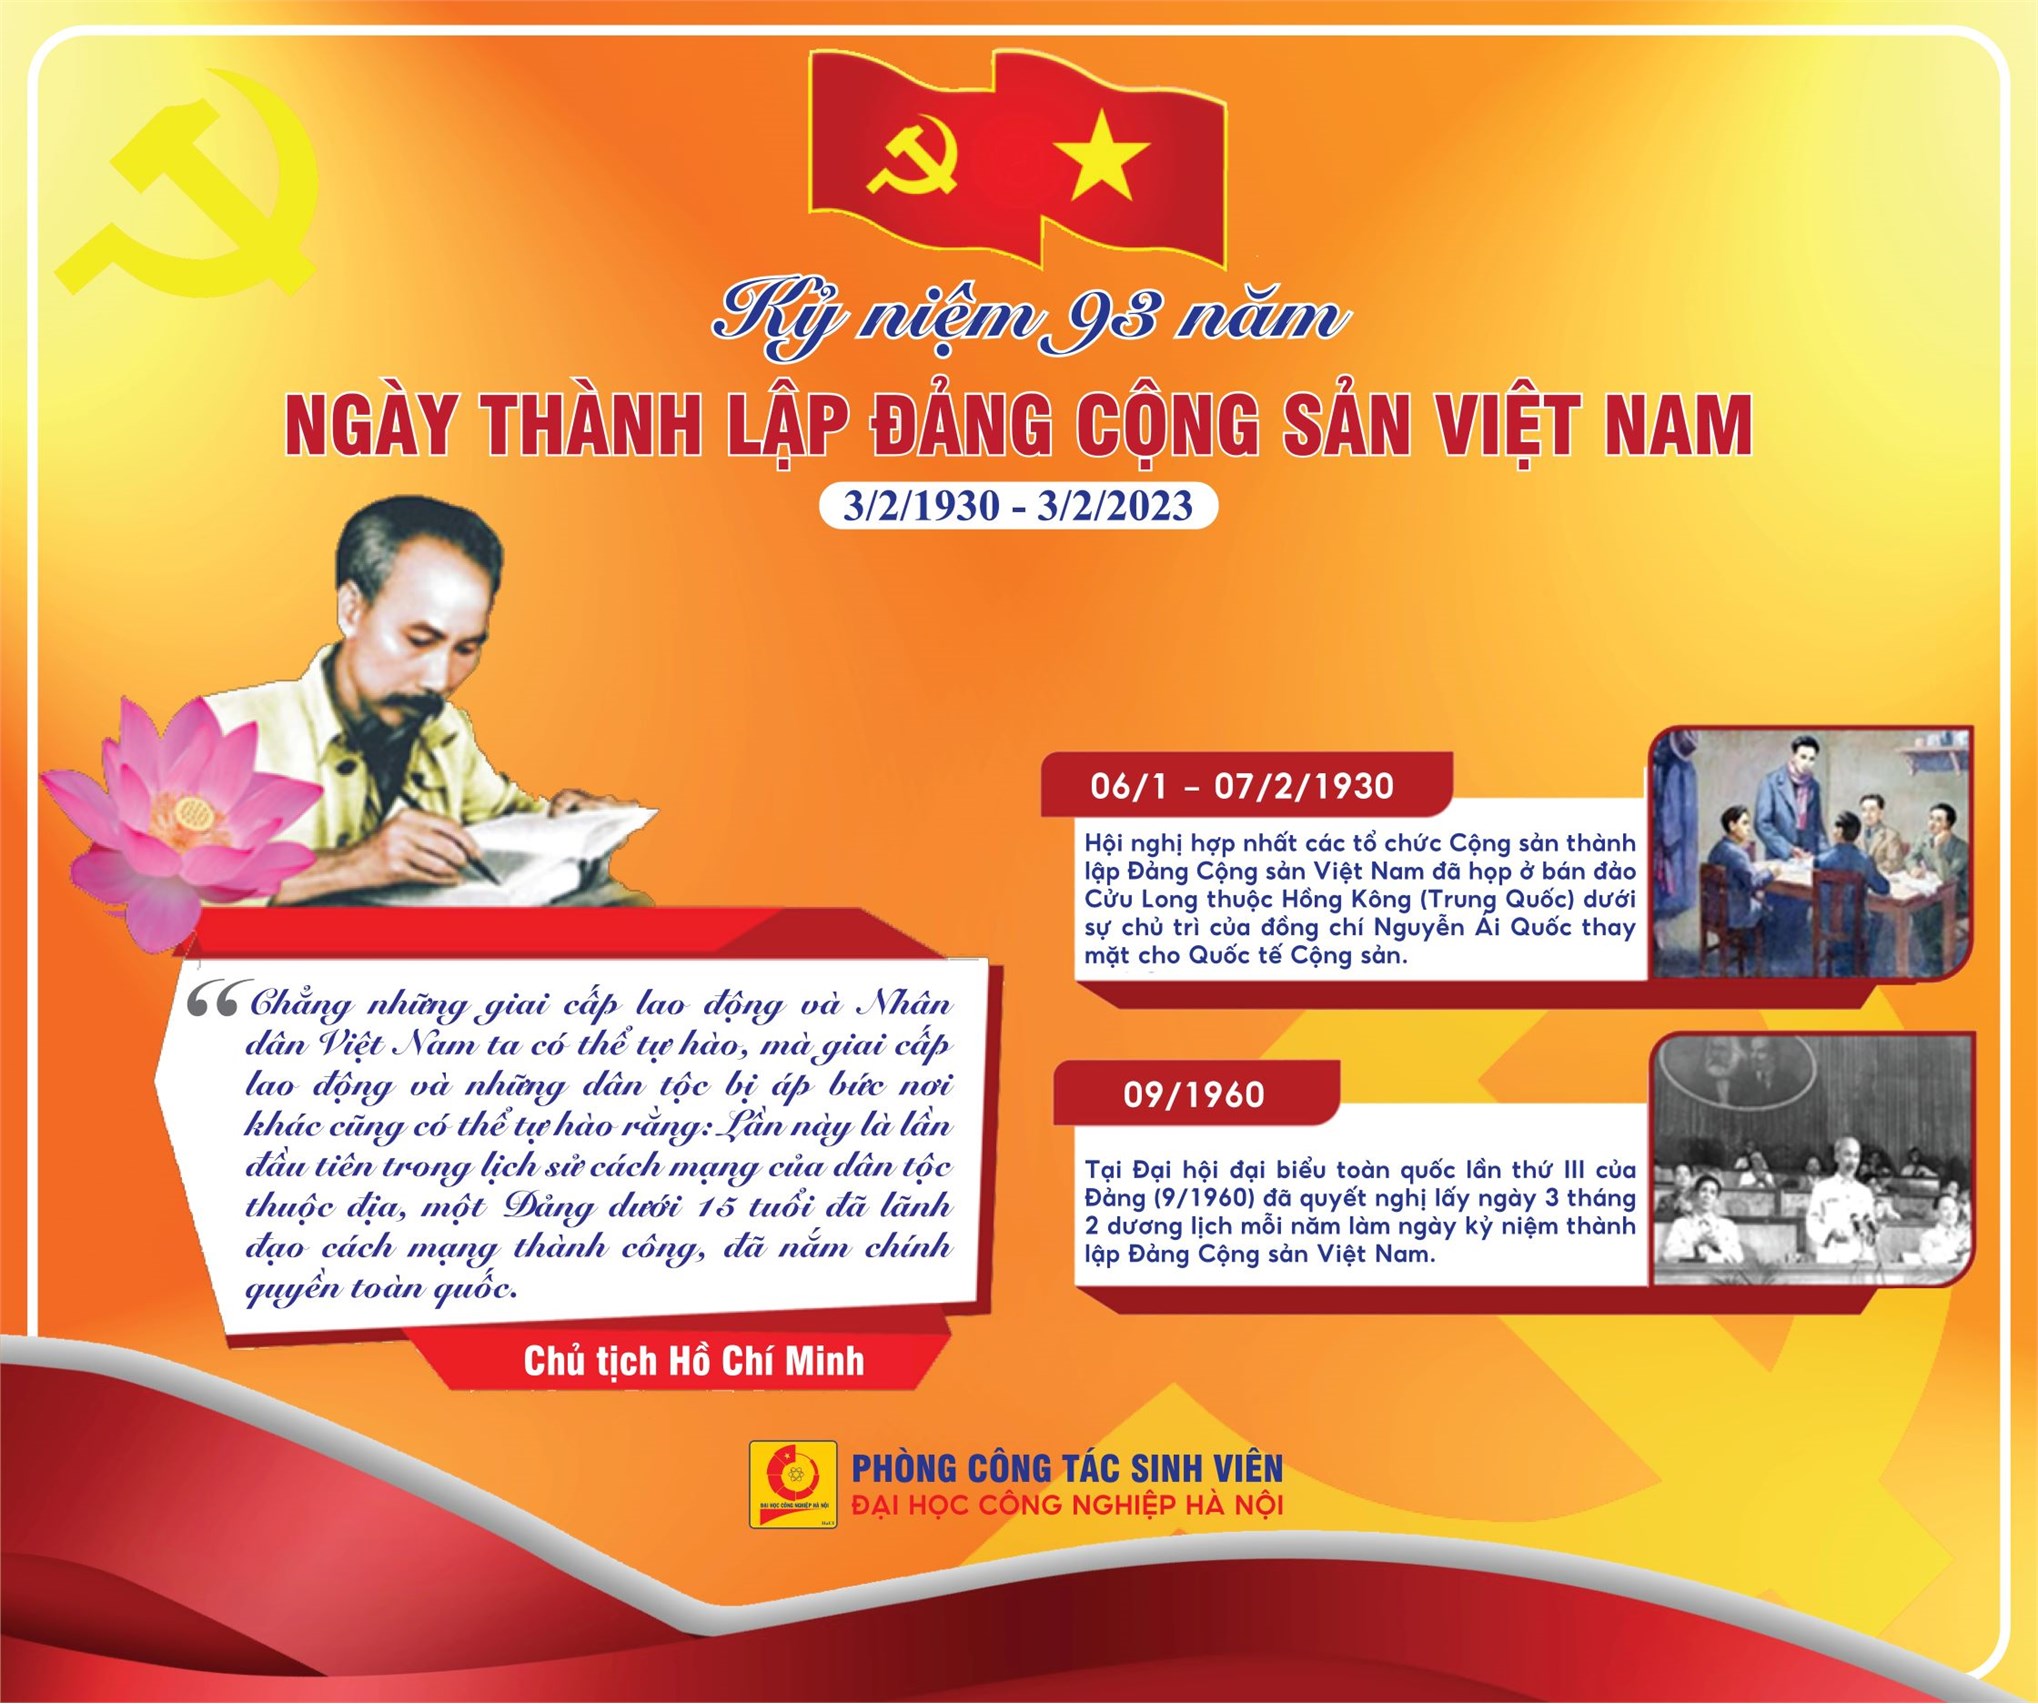 Kỷ niệm 93 năm ngày thành lập Đảng Cộng sản Việt Nam - Mốc son chói lọi trên chặng đường dành độc lập dân tộc (3/2/1930 - 3/2/2023)